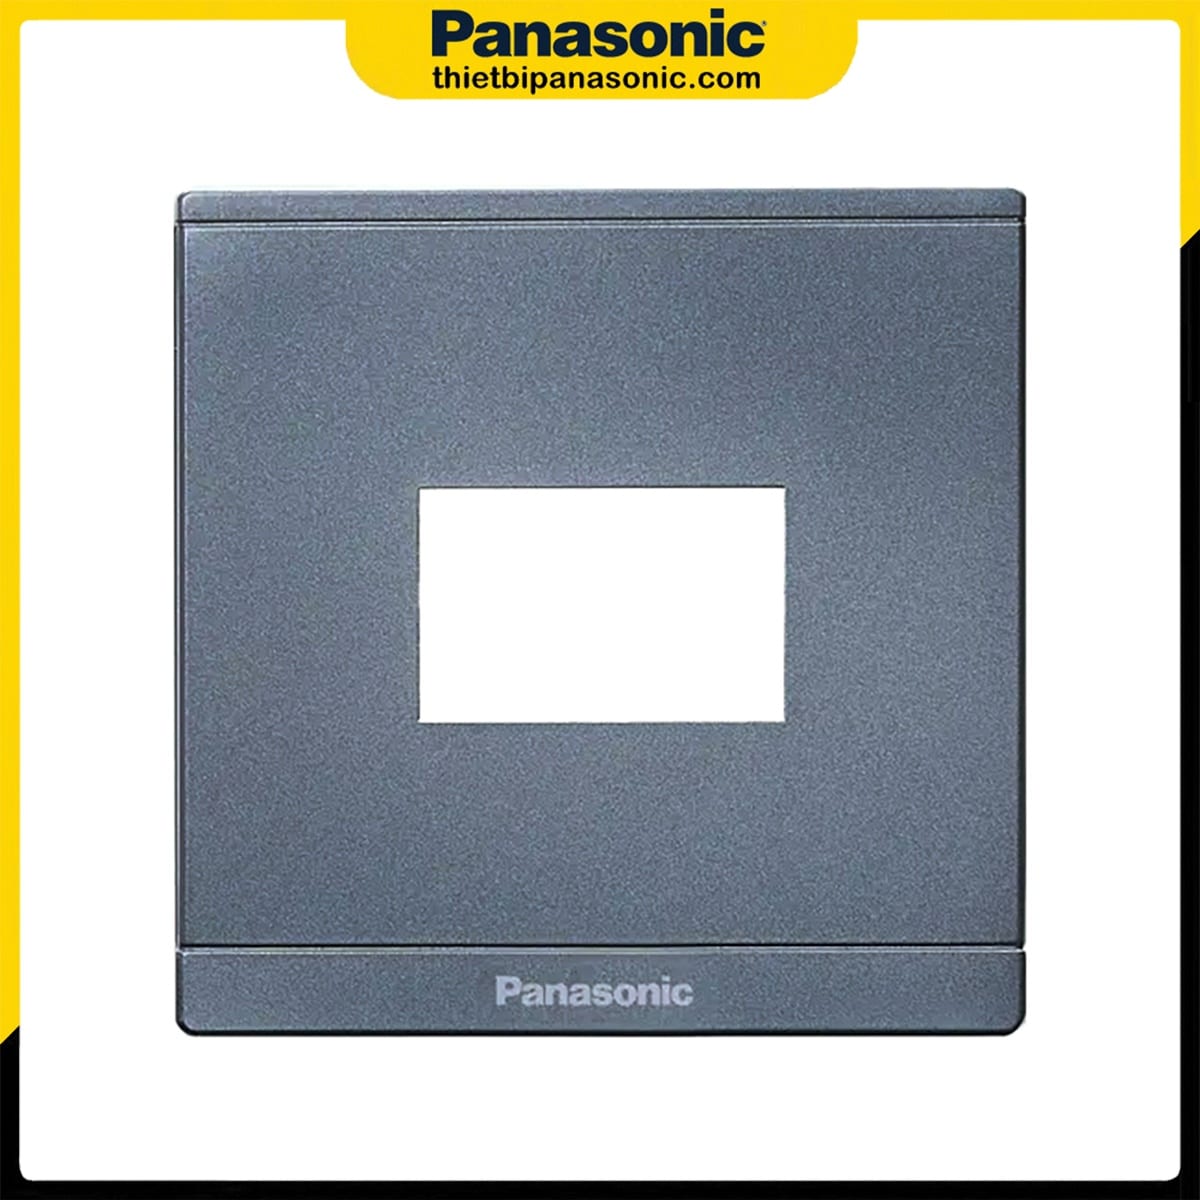 Mặt 1 thiết bị Panasonic Moderva màu xám ánh kim WMFV7811MYH